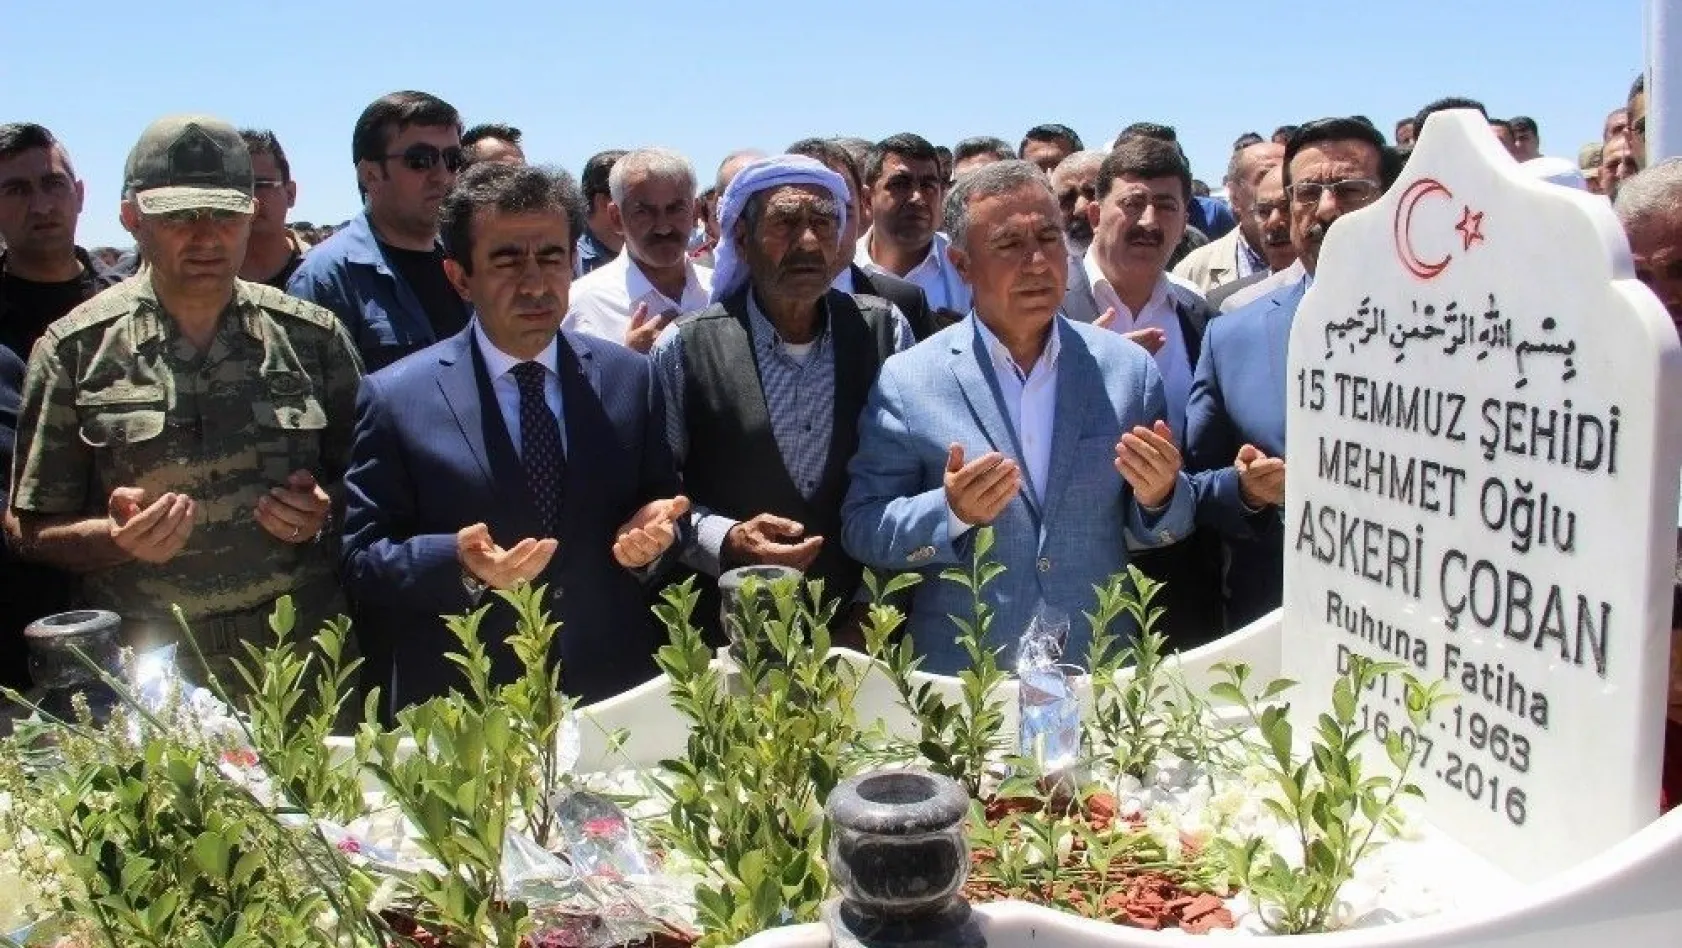 Diyarbakır'da 15 Temmuz şehitlerinin mezarları ziyaret edildi
